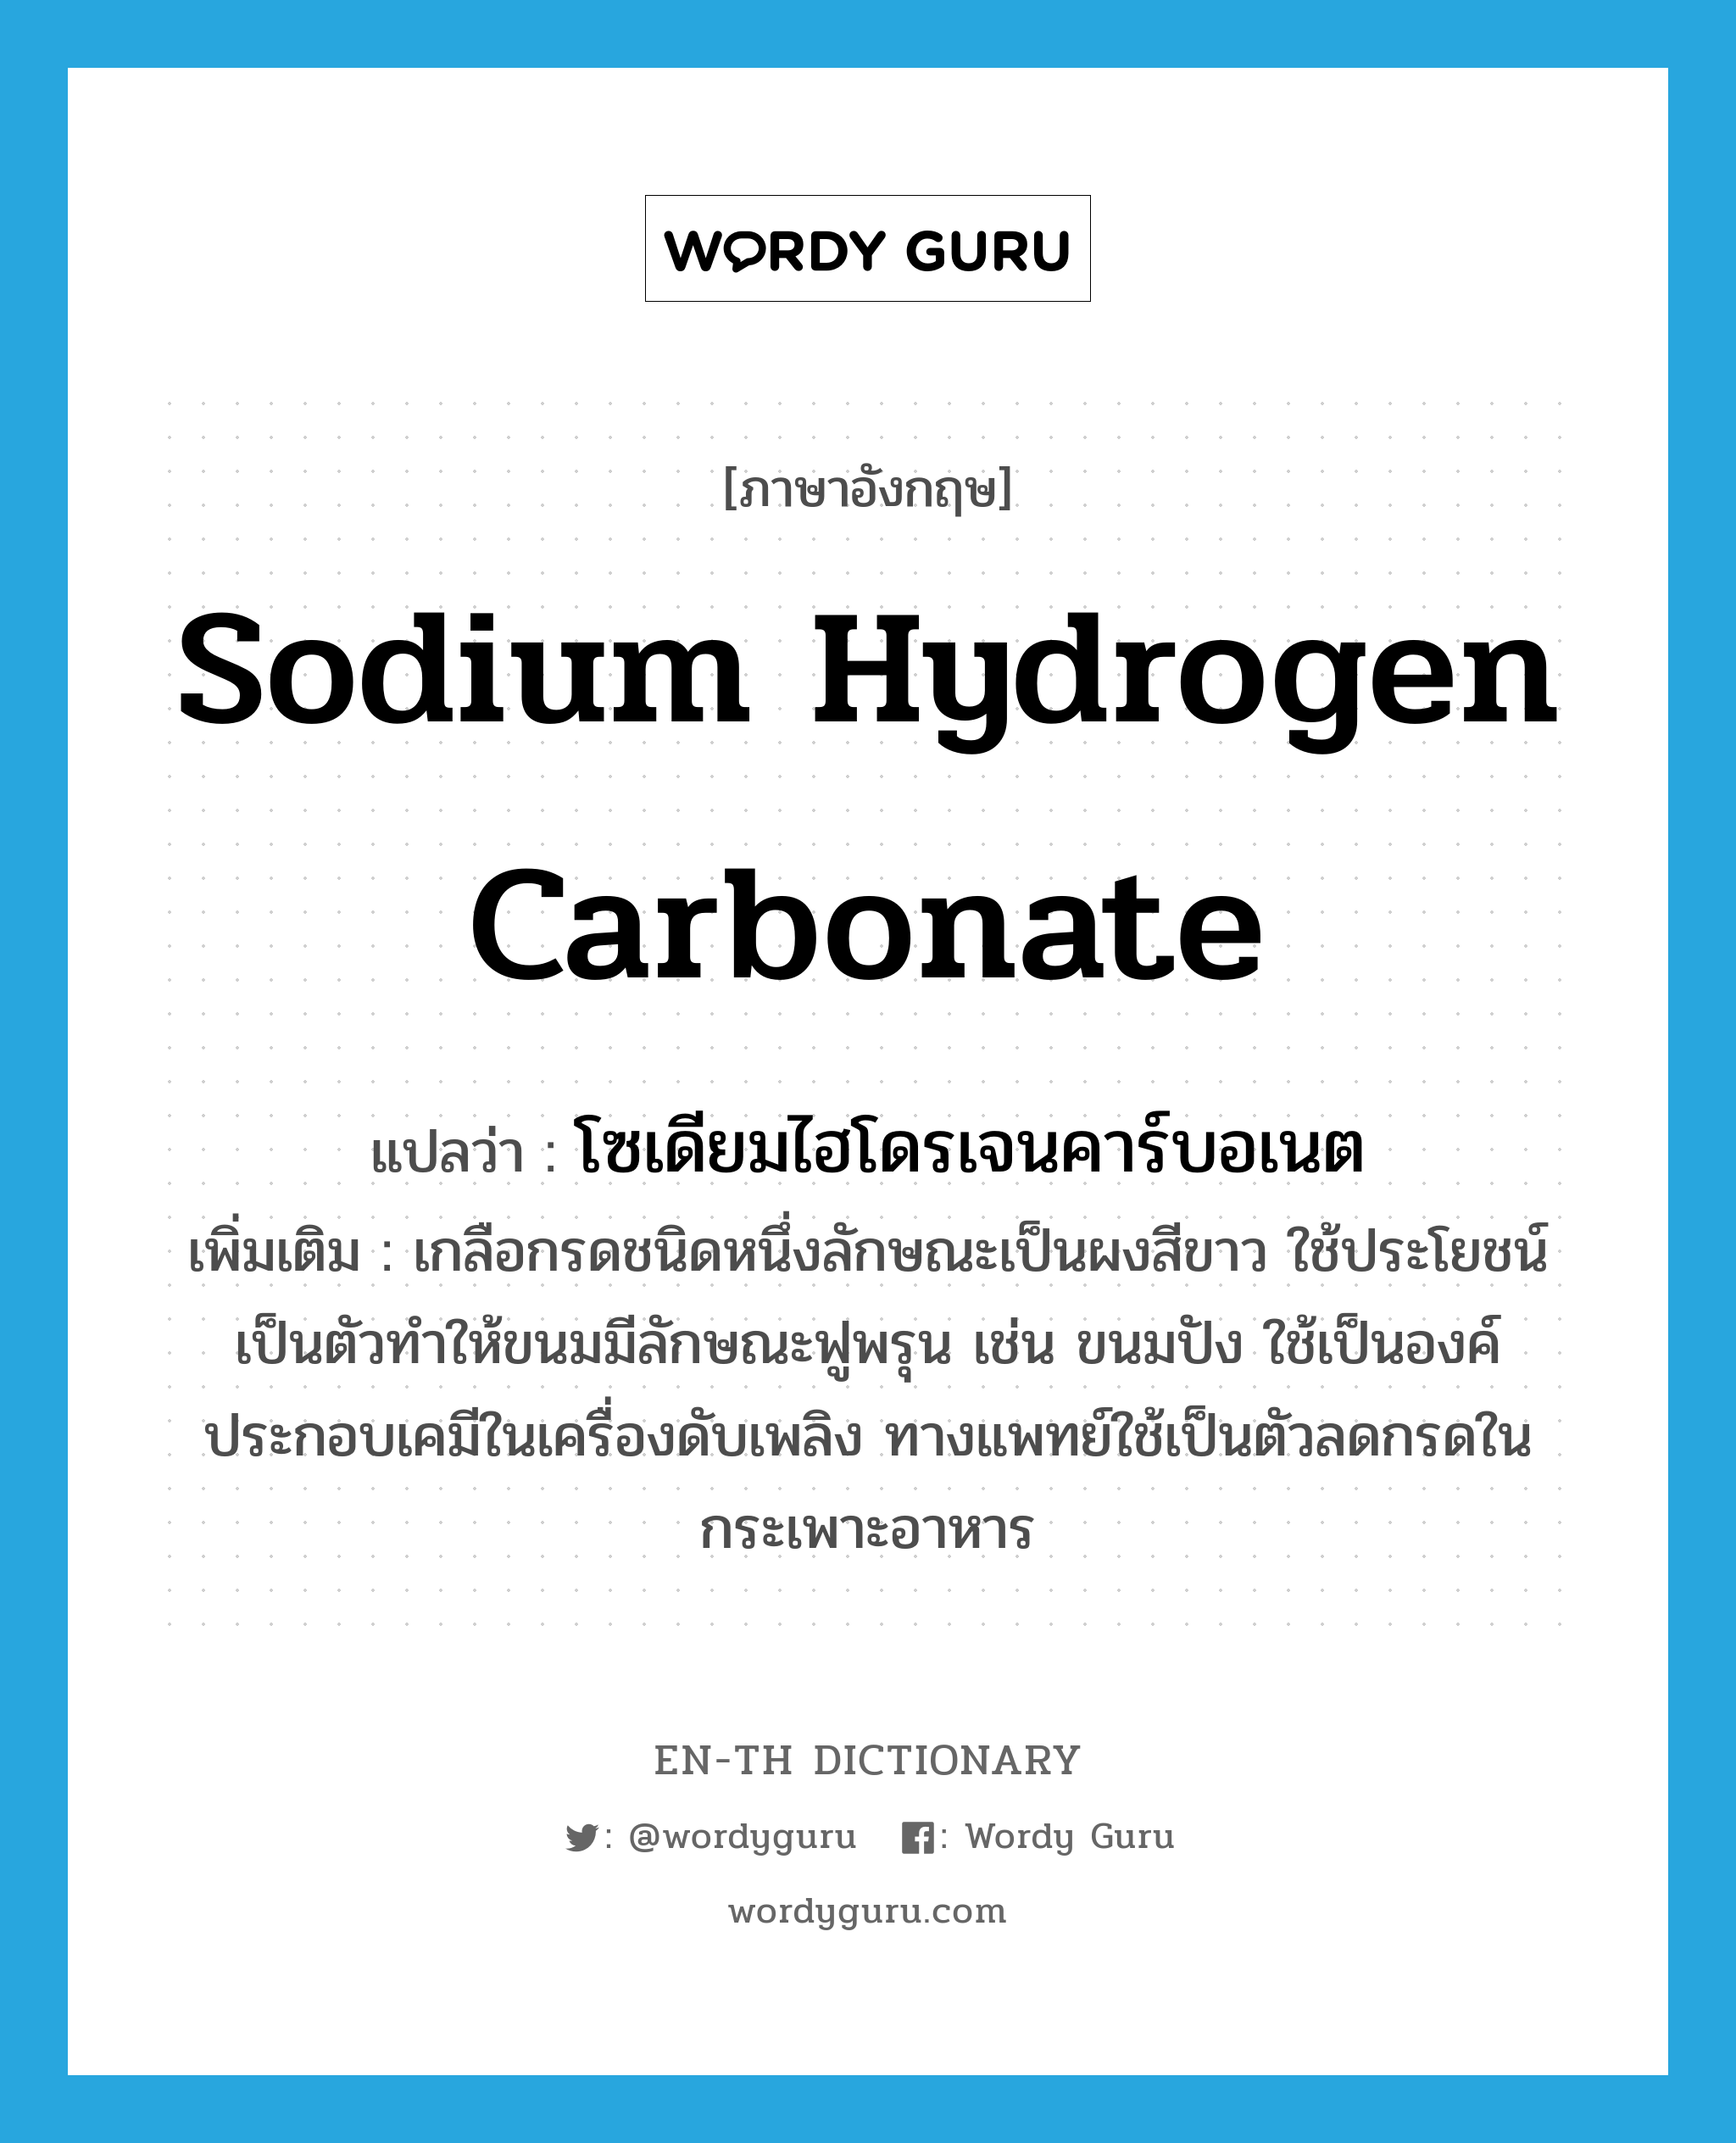 sodium hydrogen carbonate แปลว่า?, คำศัพท์ภาษาอังกฤษ sodium hydrogen carbonate แปลว่า โซเดียมไฮโดรเจนคาร์บอเนต ประเภท N เพิ่มเติม เกลือกรดชนิดหนึ่งลักษณะเป็นผงสีขาว ใช้ประโยชน์เป็นตัวทำให้ขนมมีลักษณะฟูพรุน เช่น ขนมปัง ใช้เป็นองค์ประกอบเคมีในเครื่องดับเพลิง ทางแพทย์ใช้เป็นตัวลดกรดในกระเพาะอาหาร หมวด N